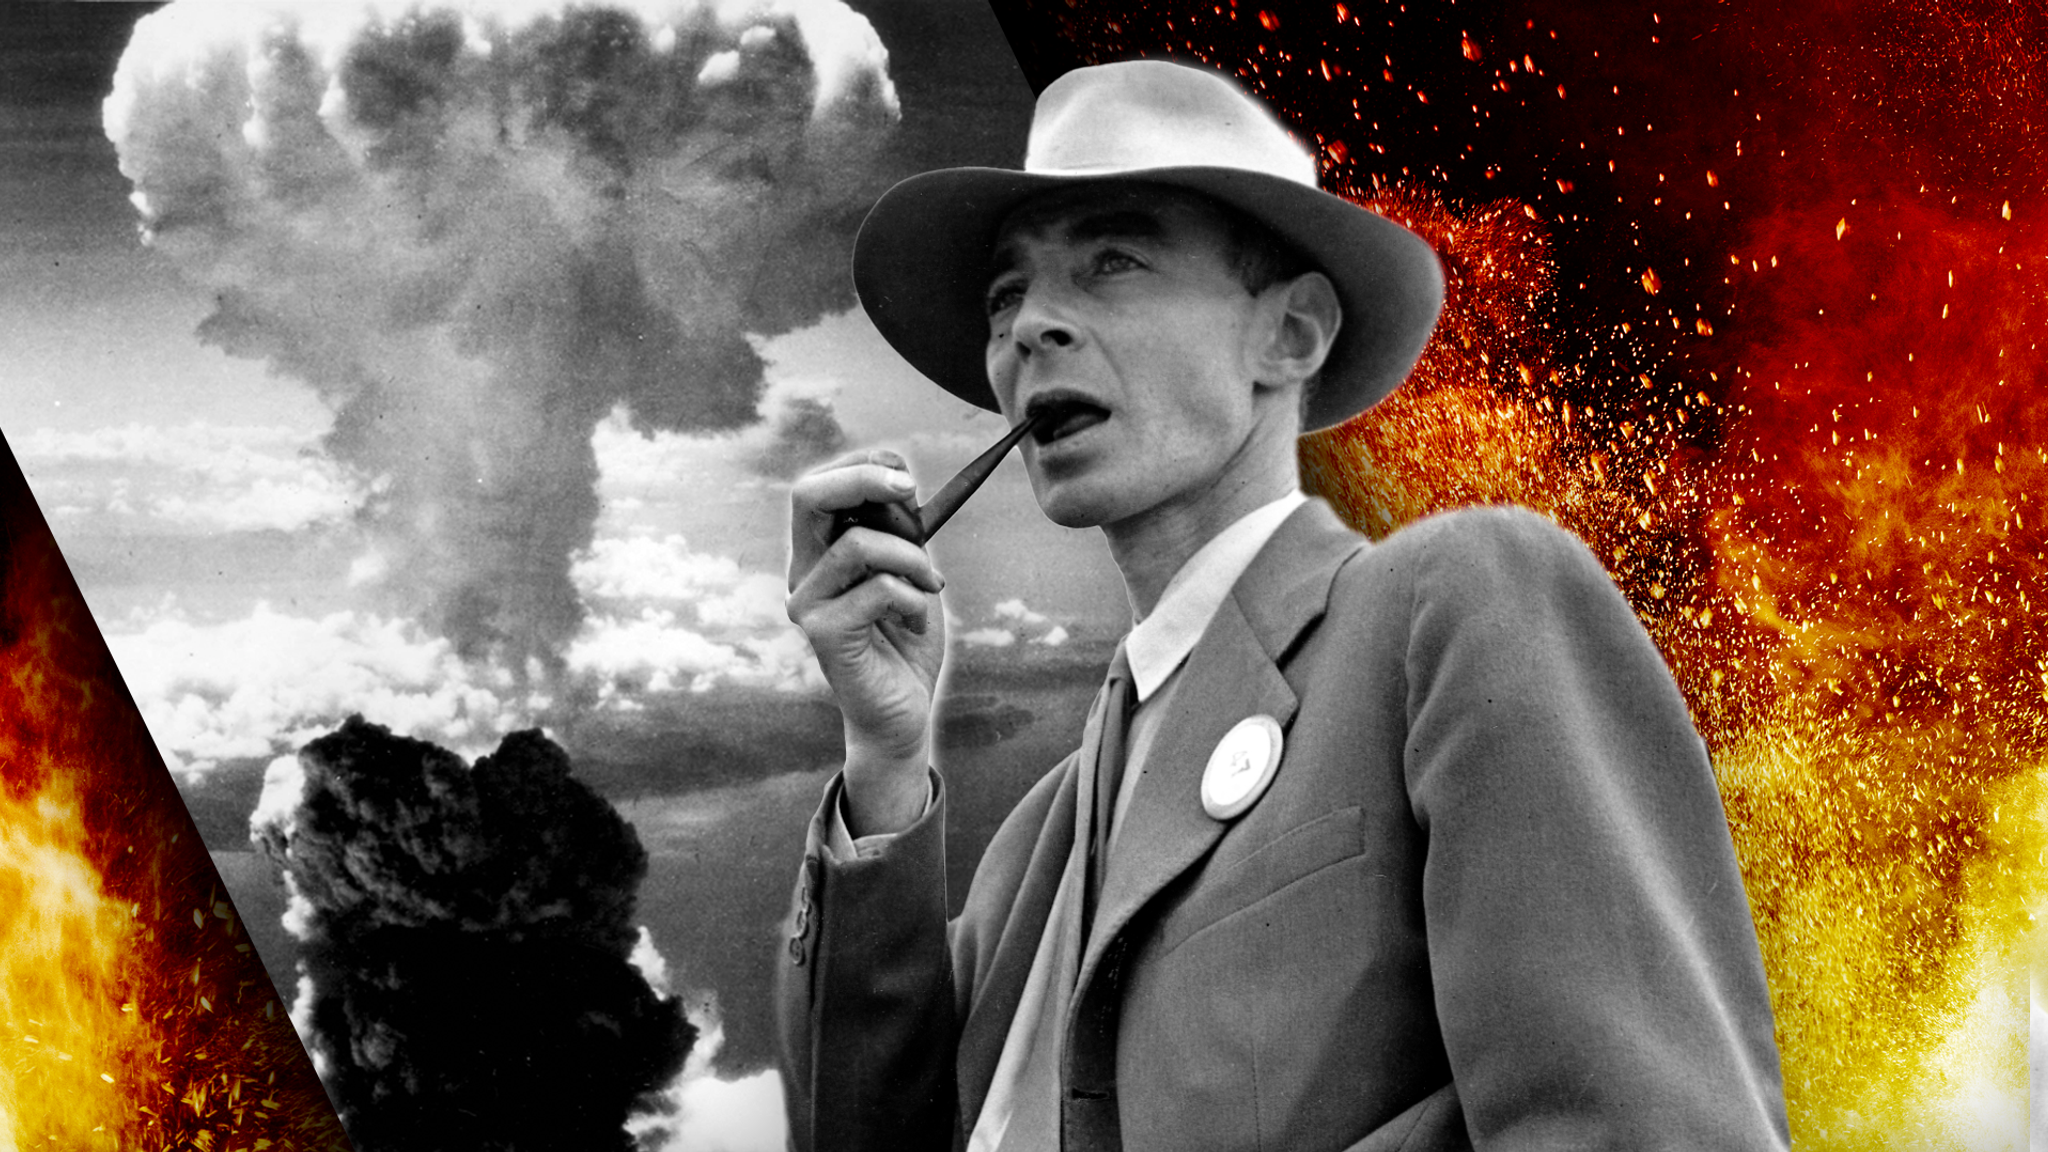 Oppenheimer & The Atomic Bomb